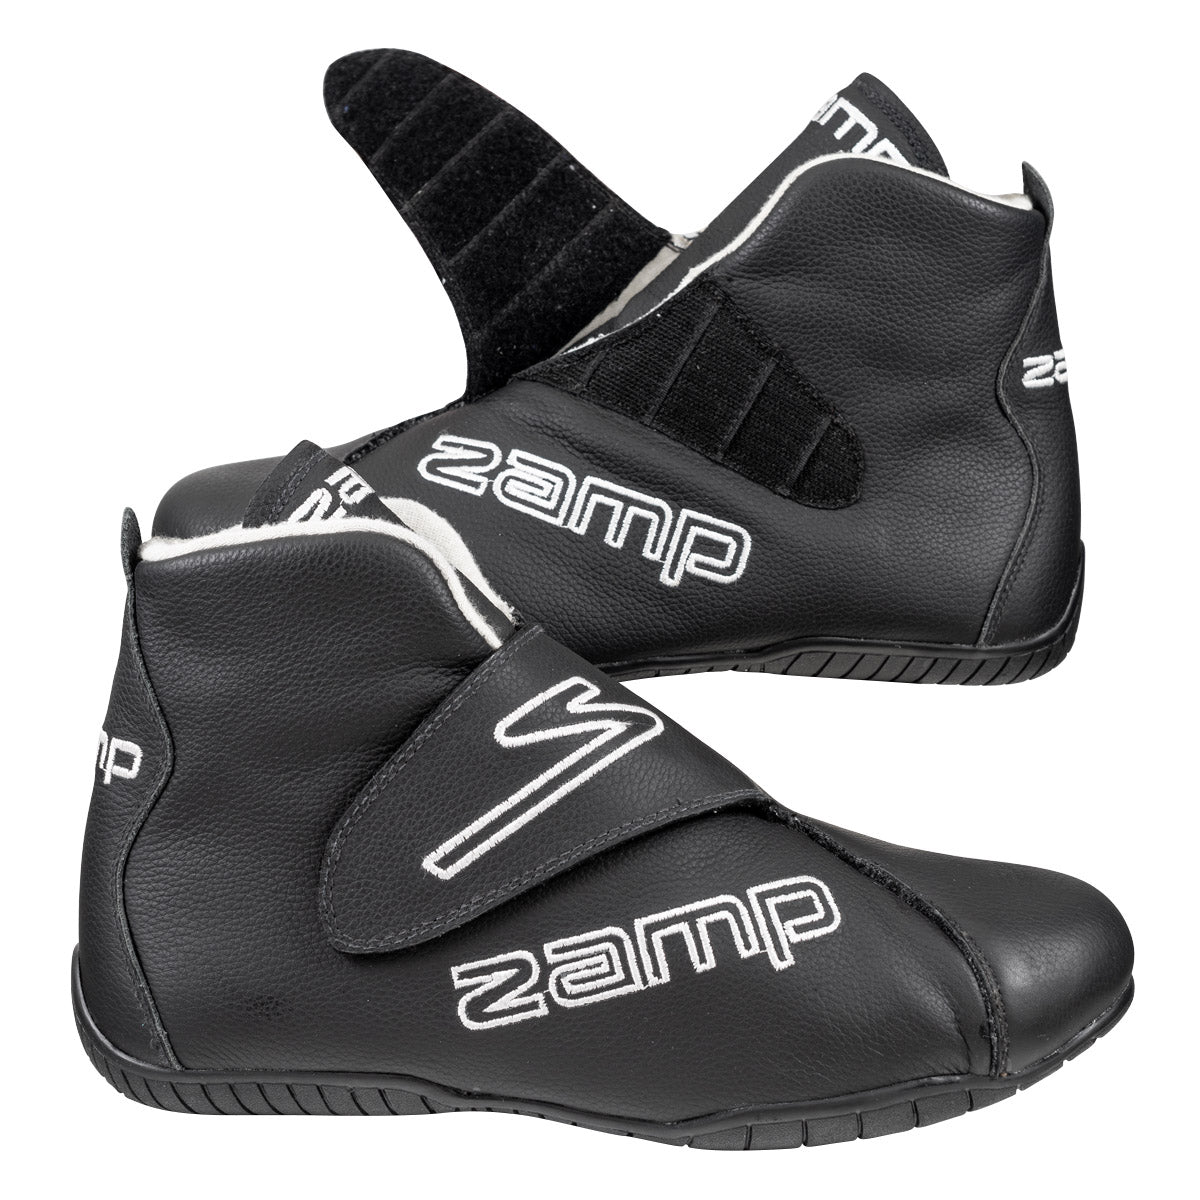 Zamp ZR-Drag Shoes, SFI 3.3/20